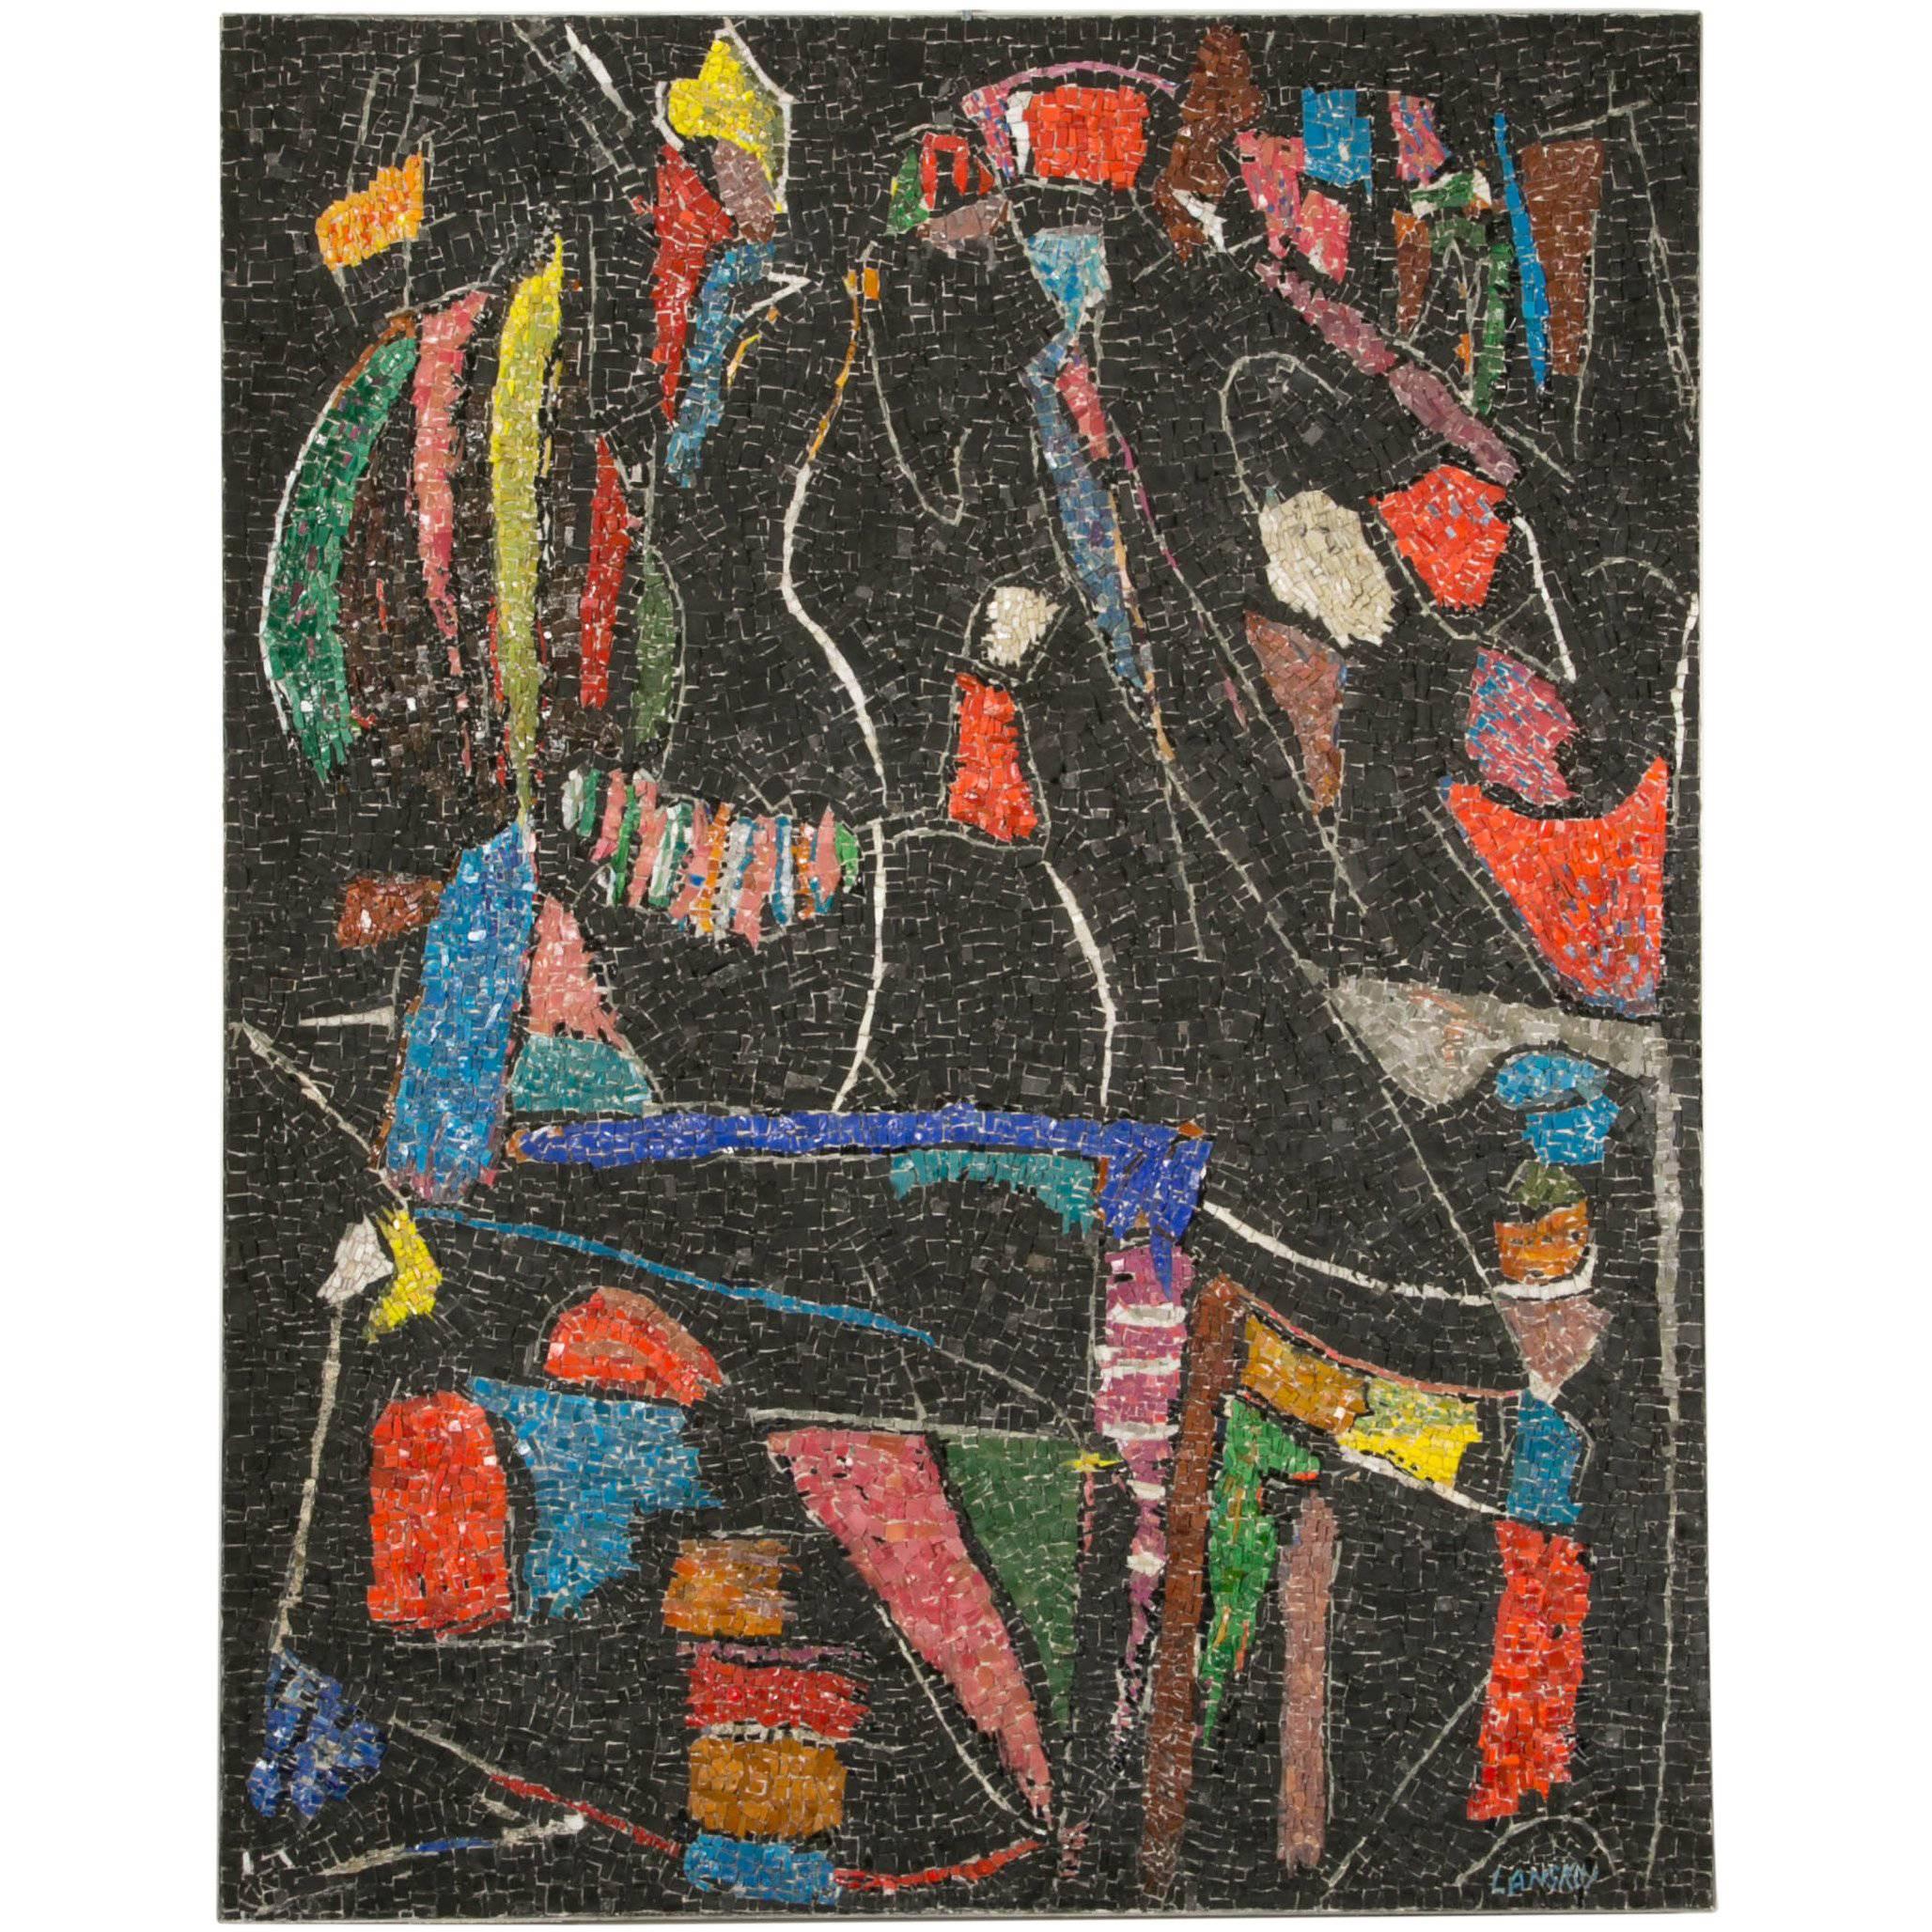 André Lanskoy, Mosaic "Black Background"